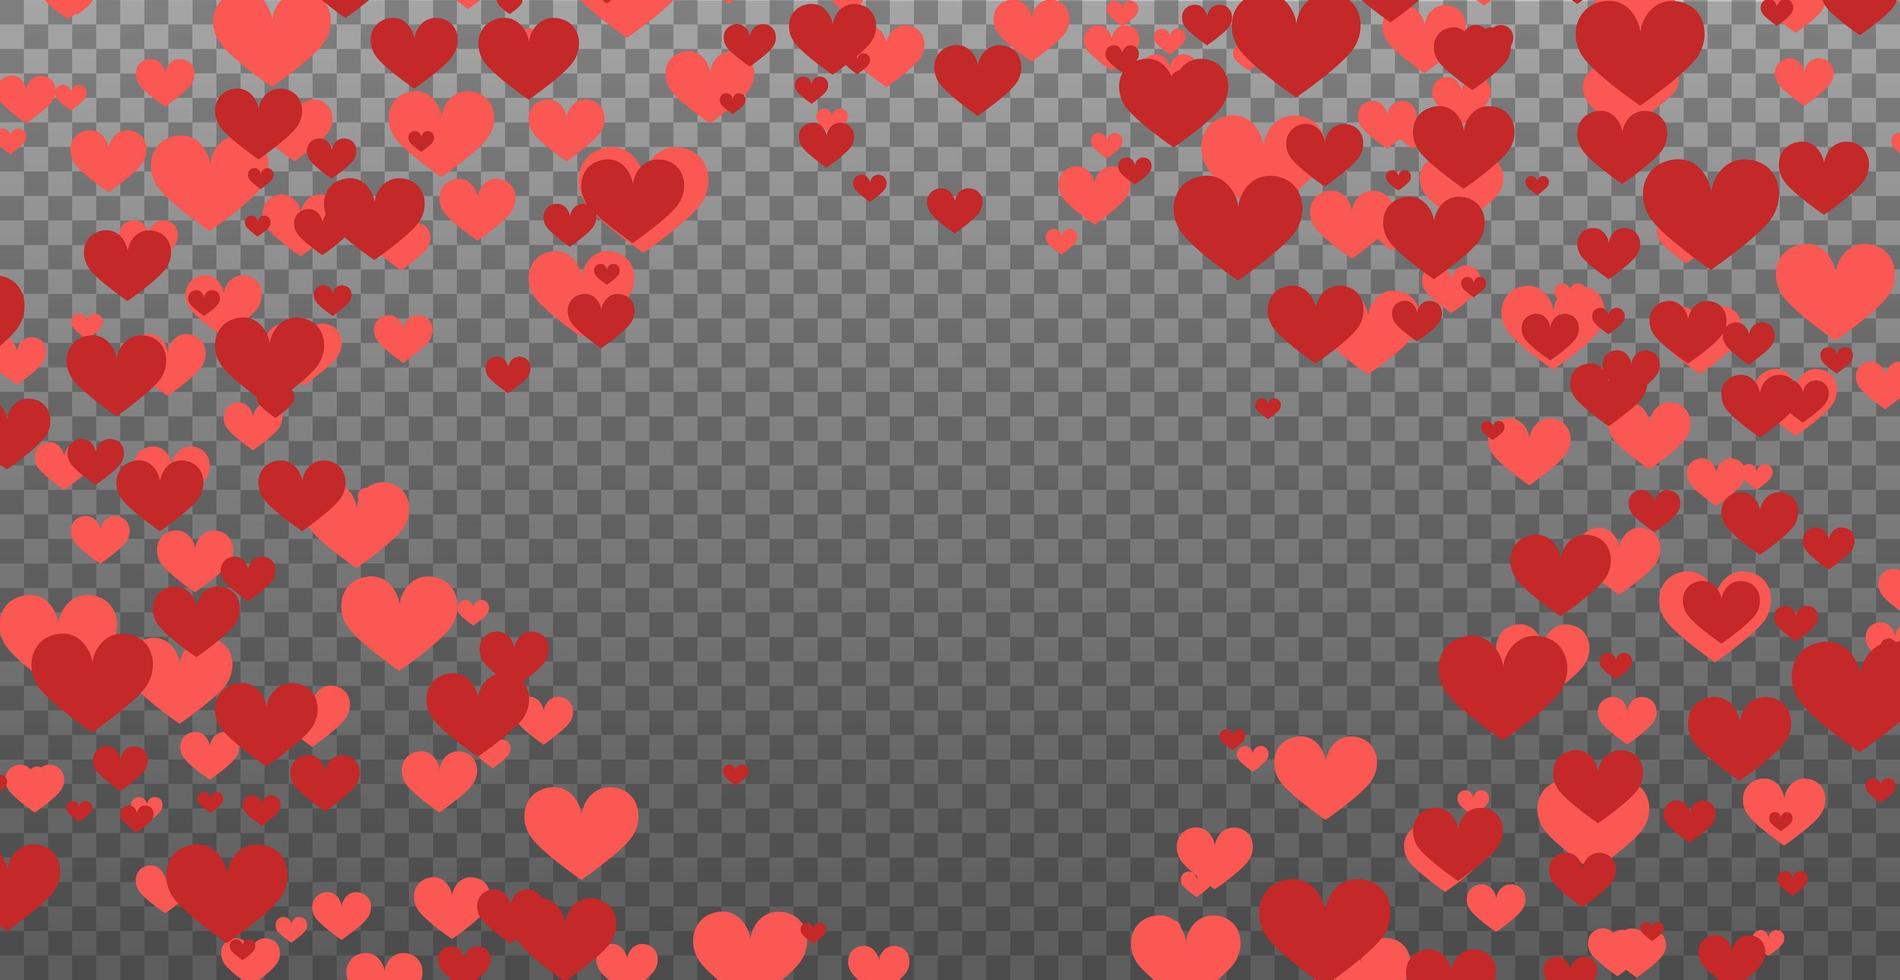 corazones rojos en plantilla web de fondo transparente vector